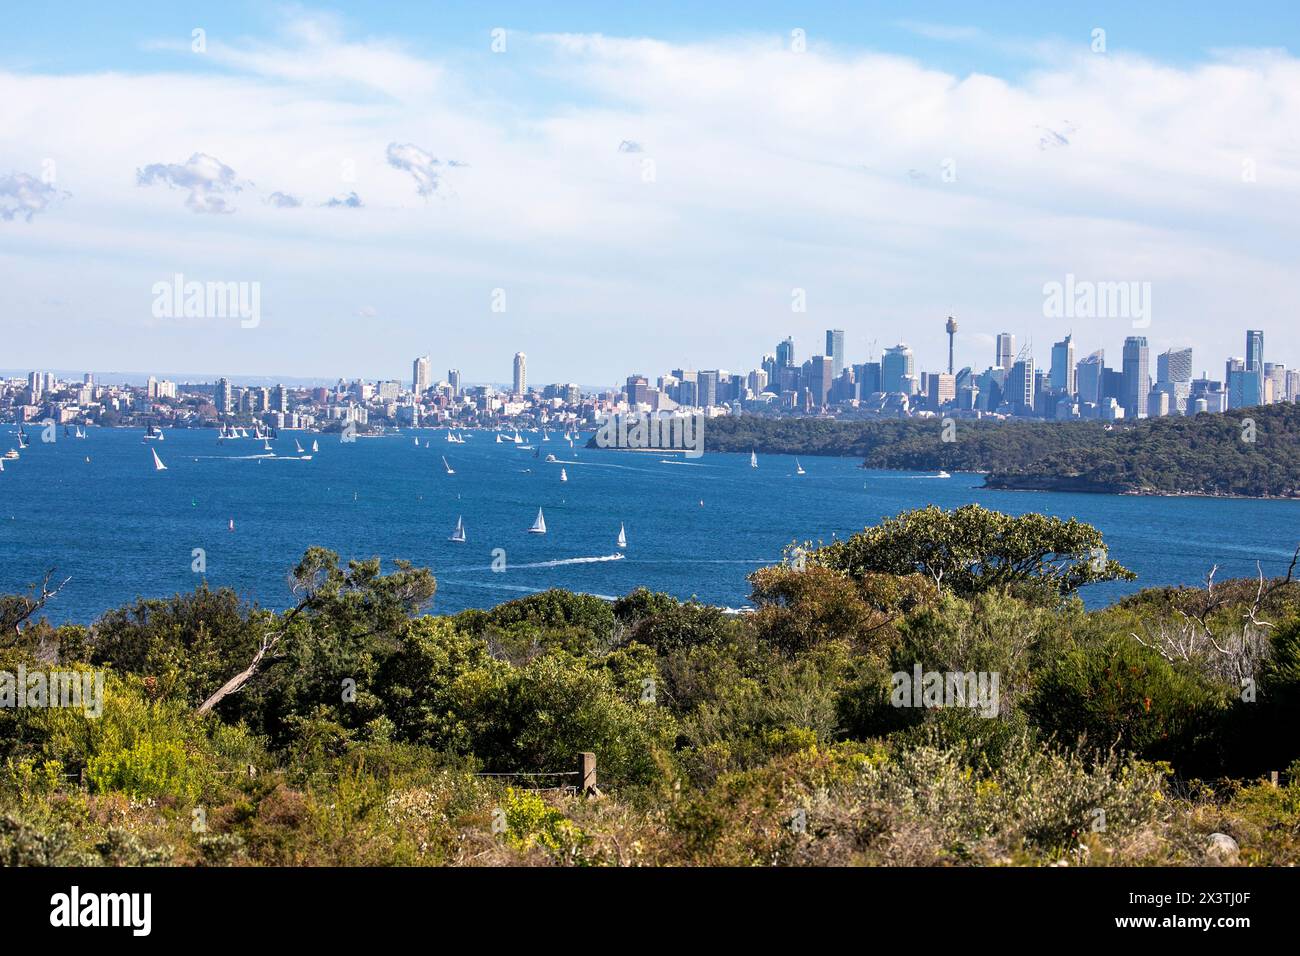 Skyline und Stadtansicht im Stadtzentrum von Sydney von North Head Manly aus, über den Hafen von Sydney und Sydney Heads, NSW, Australien Stockfoto